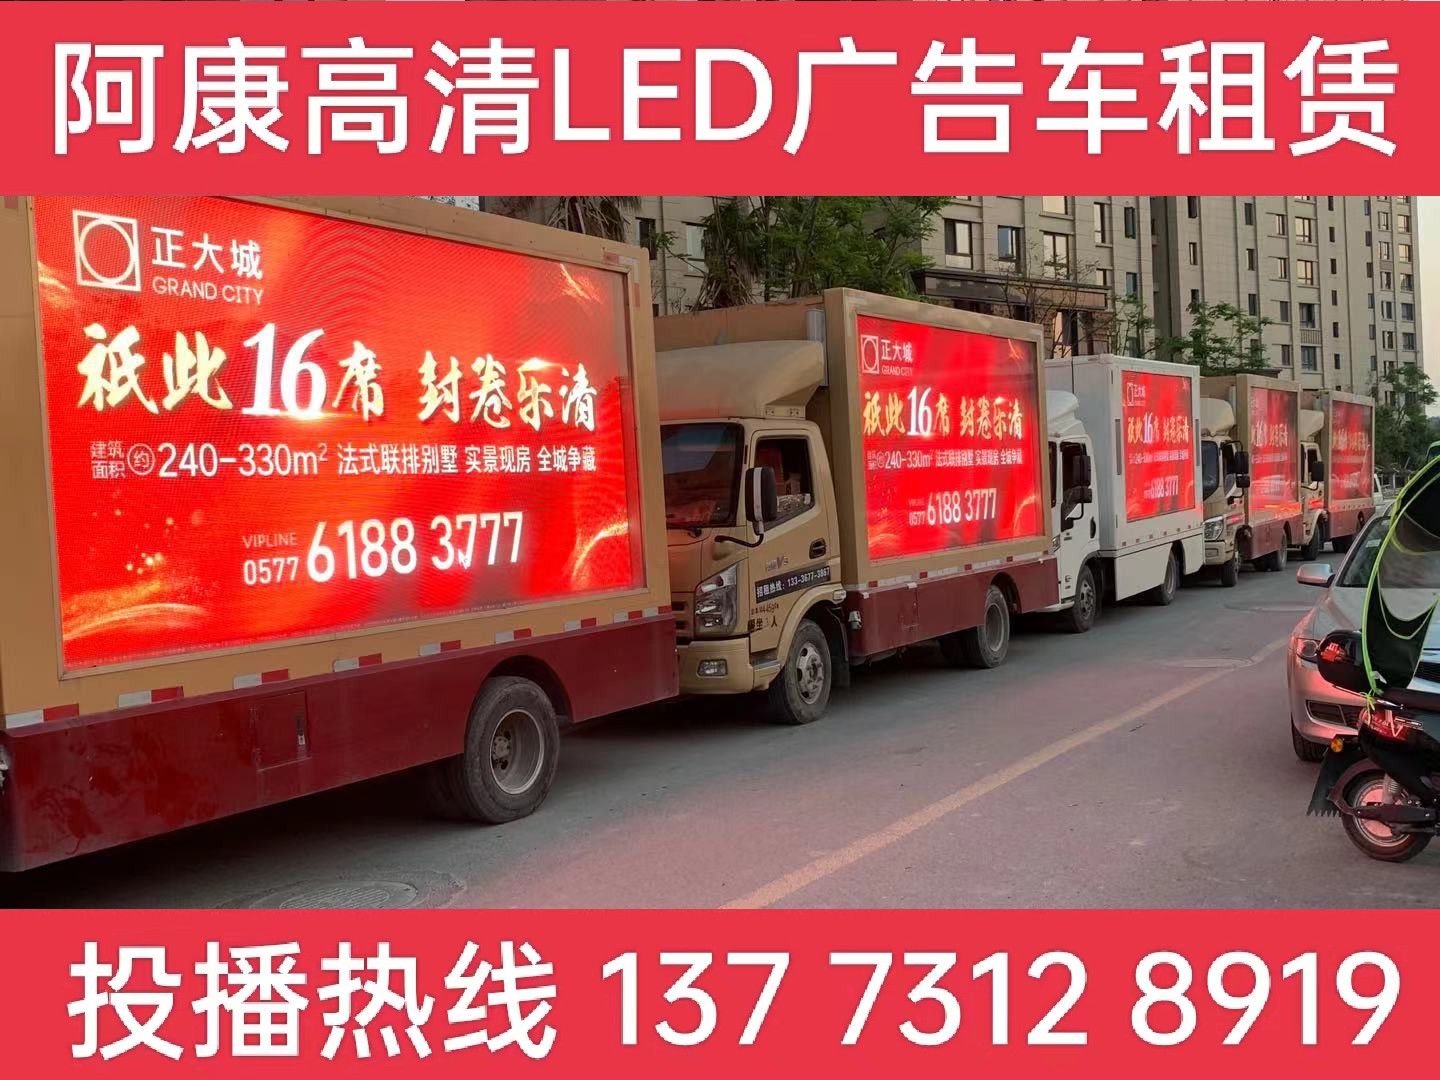 崇明岛LED广告车出租